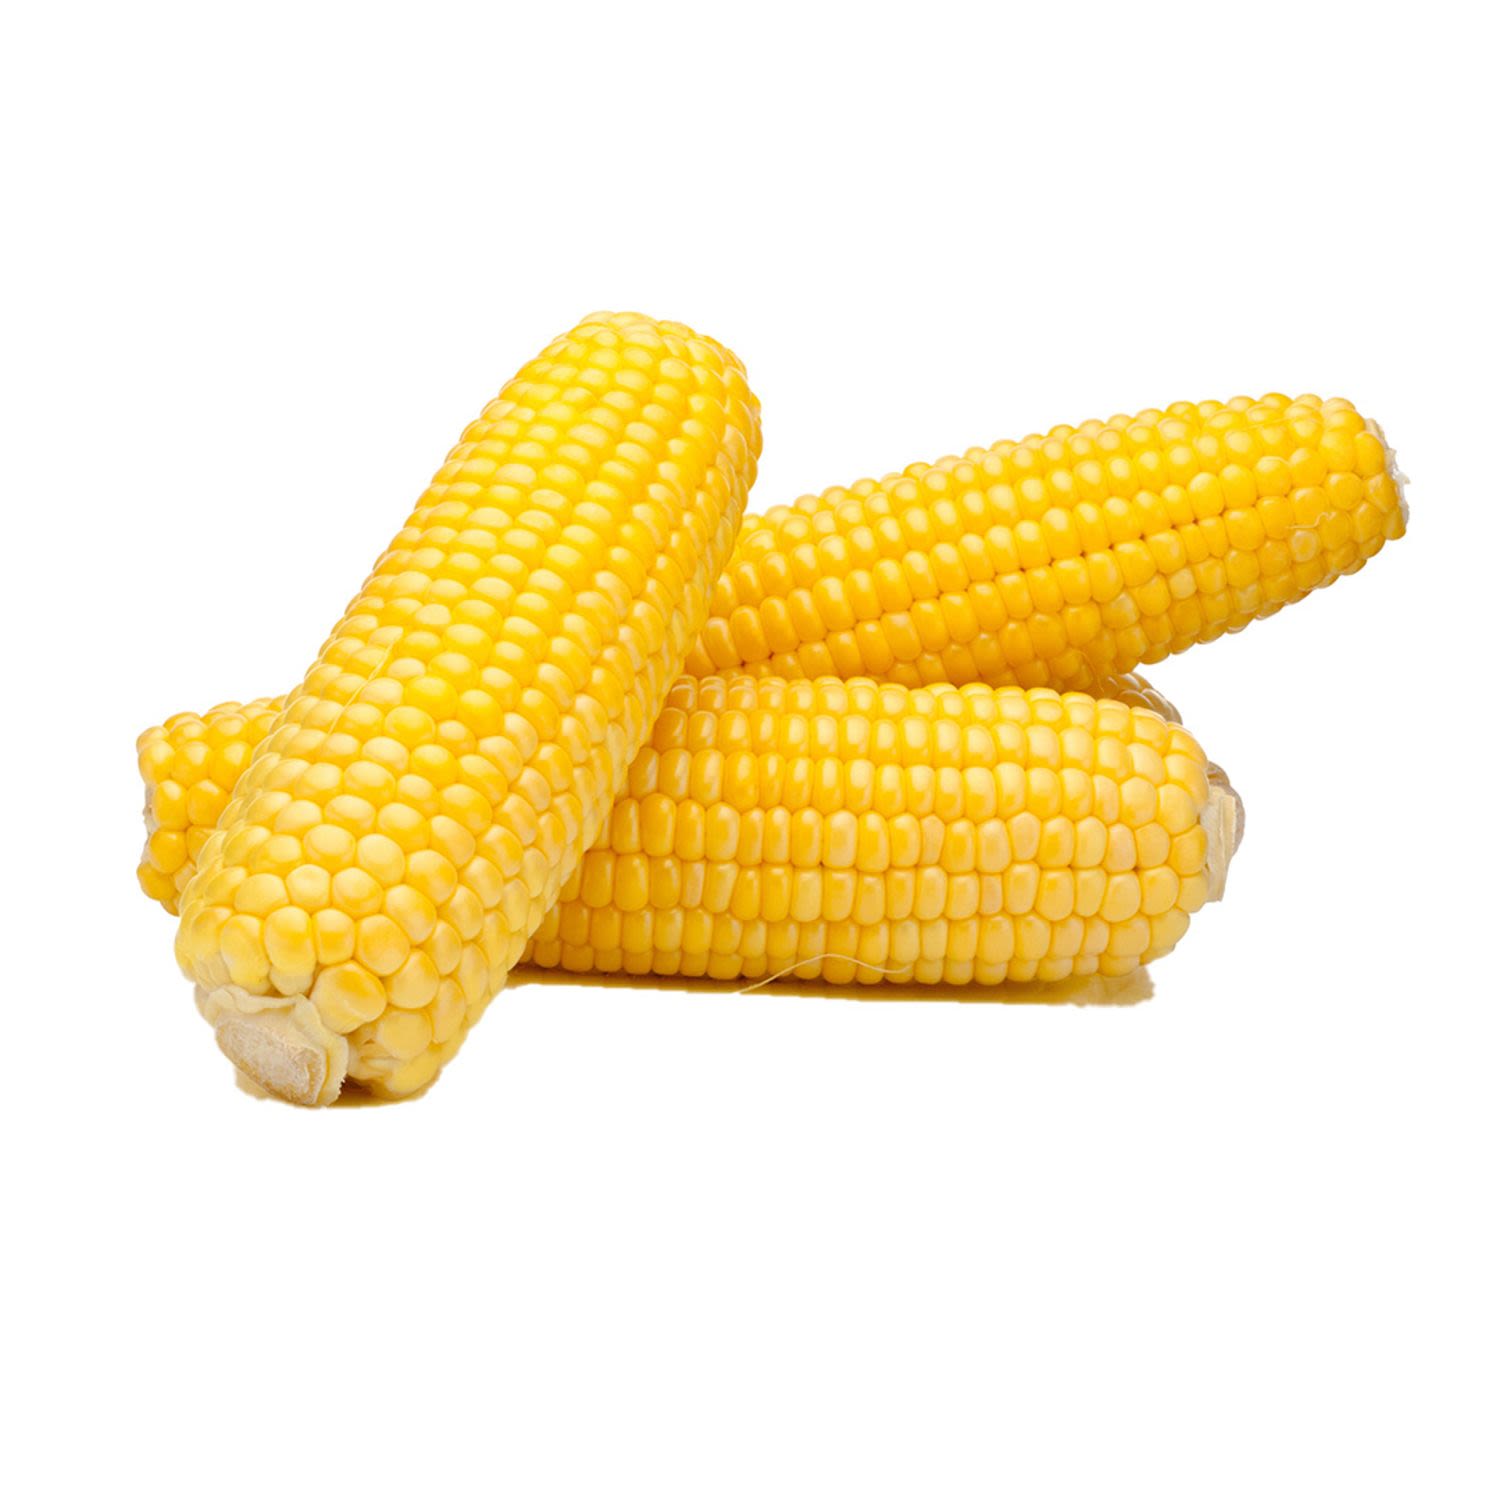 Sweet Corn, 1 Each